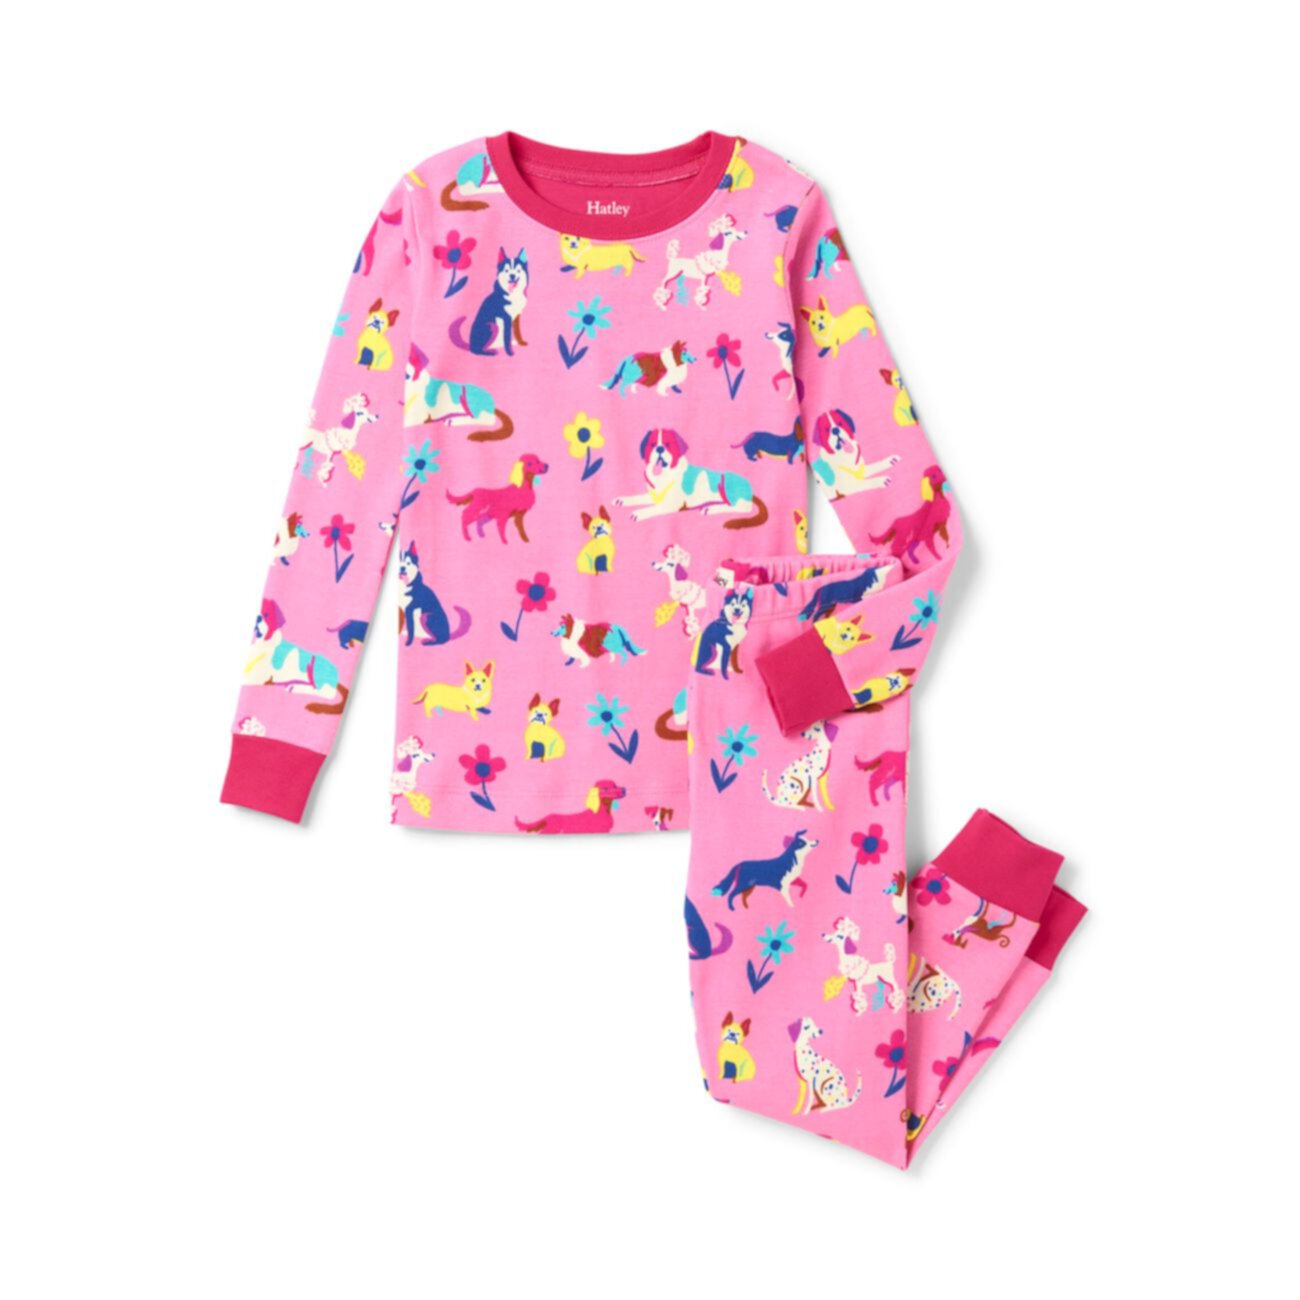 Детская одежда маркетплейс. Hatley пижама. Пижама для девочки. Детские пижамы для девочек. Розовая пижама.